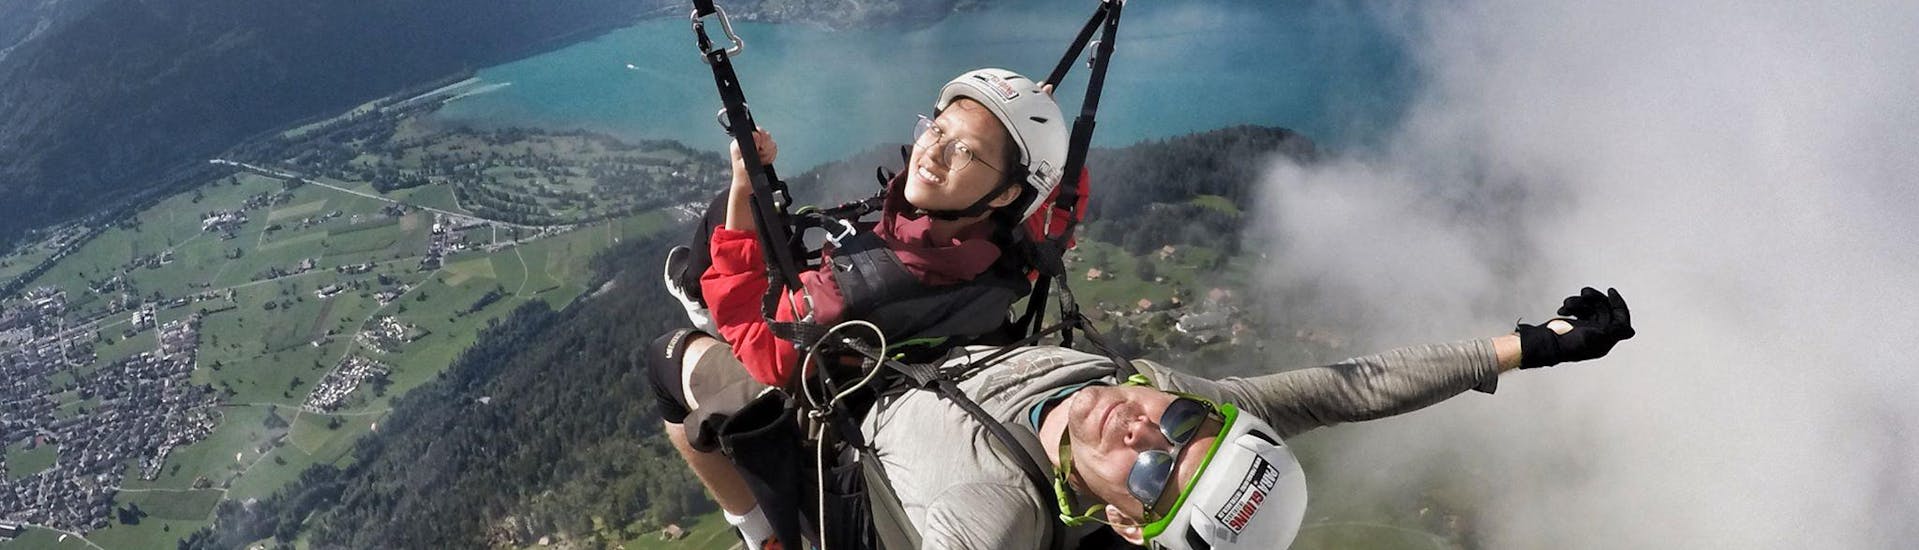 Beim Tandem Paragliding "Big Blue" - Jungfraumassif mit Paragliding Interlaken geniessen eine Passagierin und ihr zertifizierter Tandempilot die fantastische Aussicht über Interlaken.